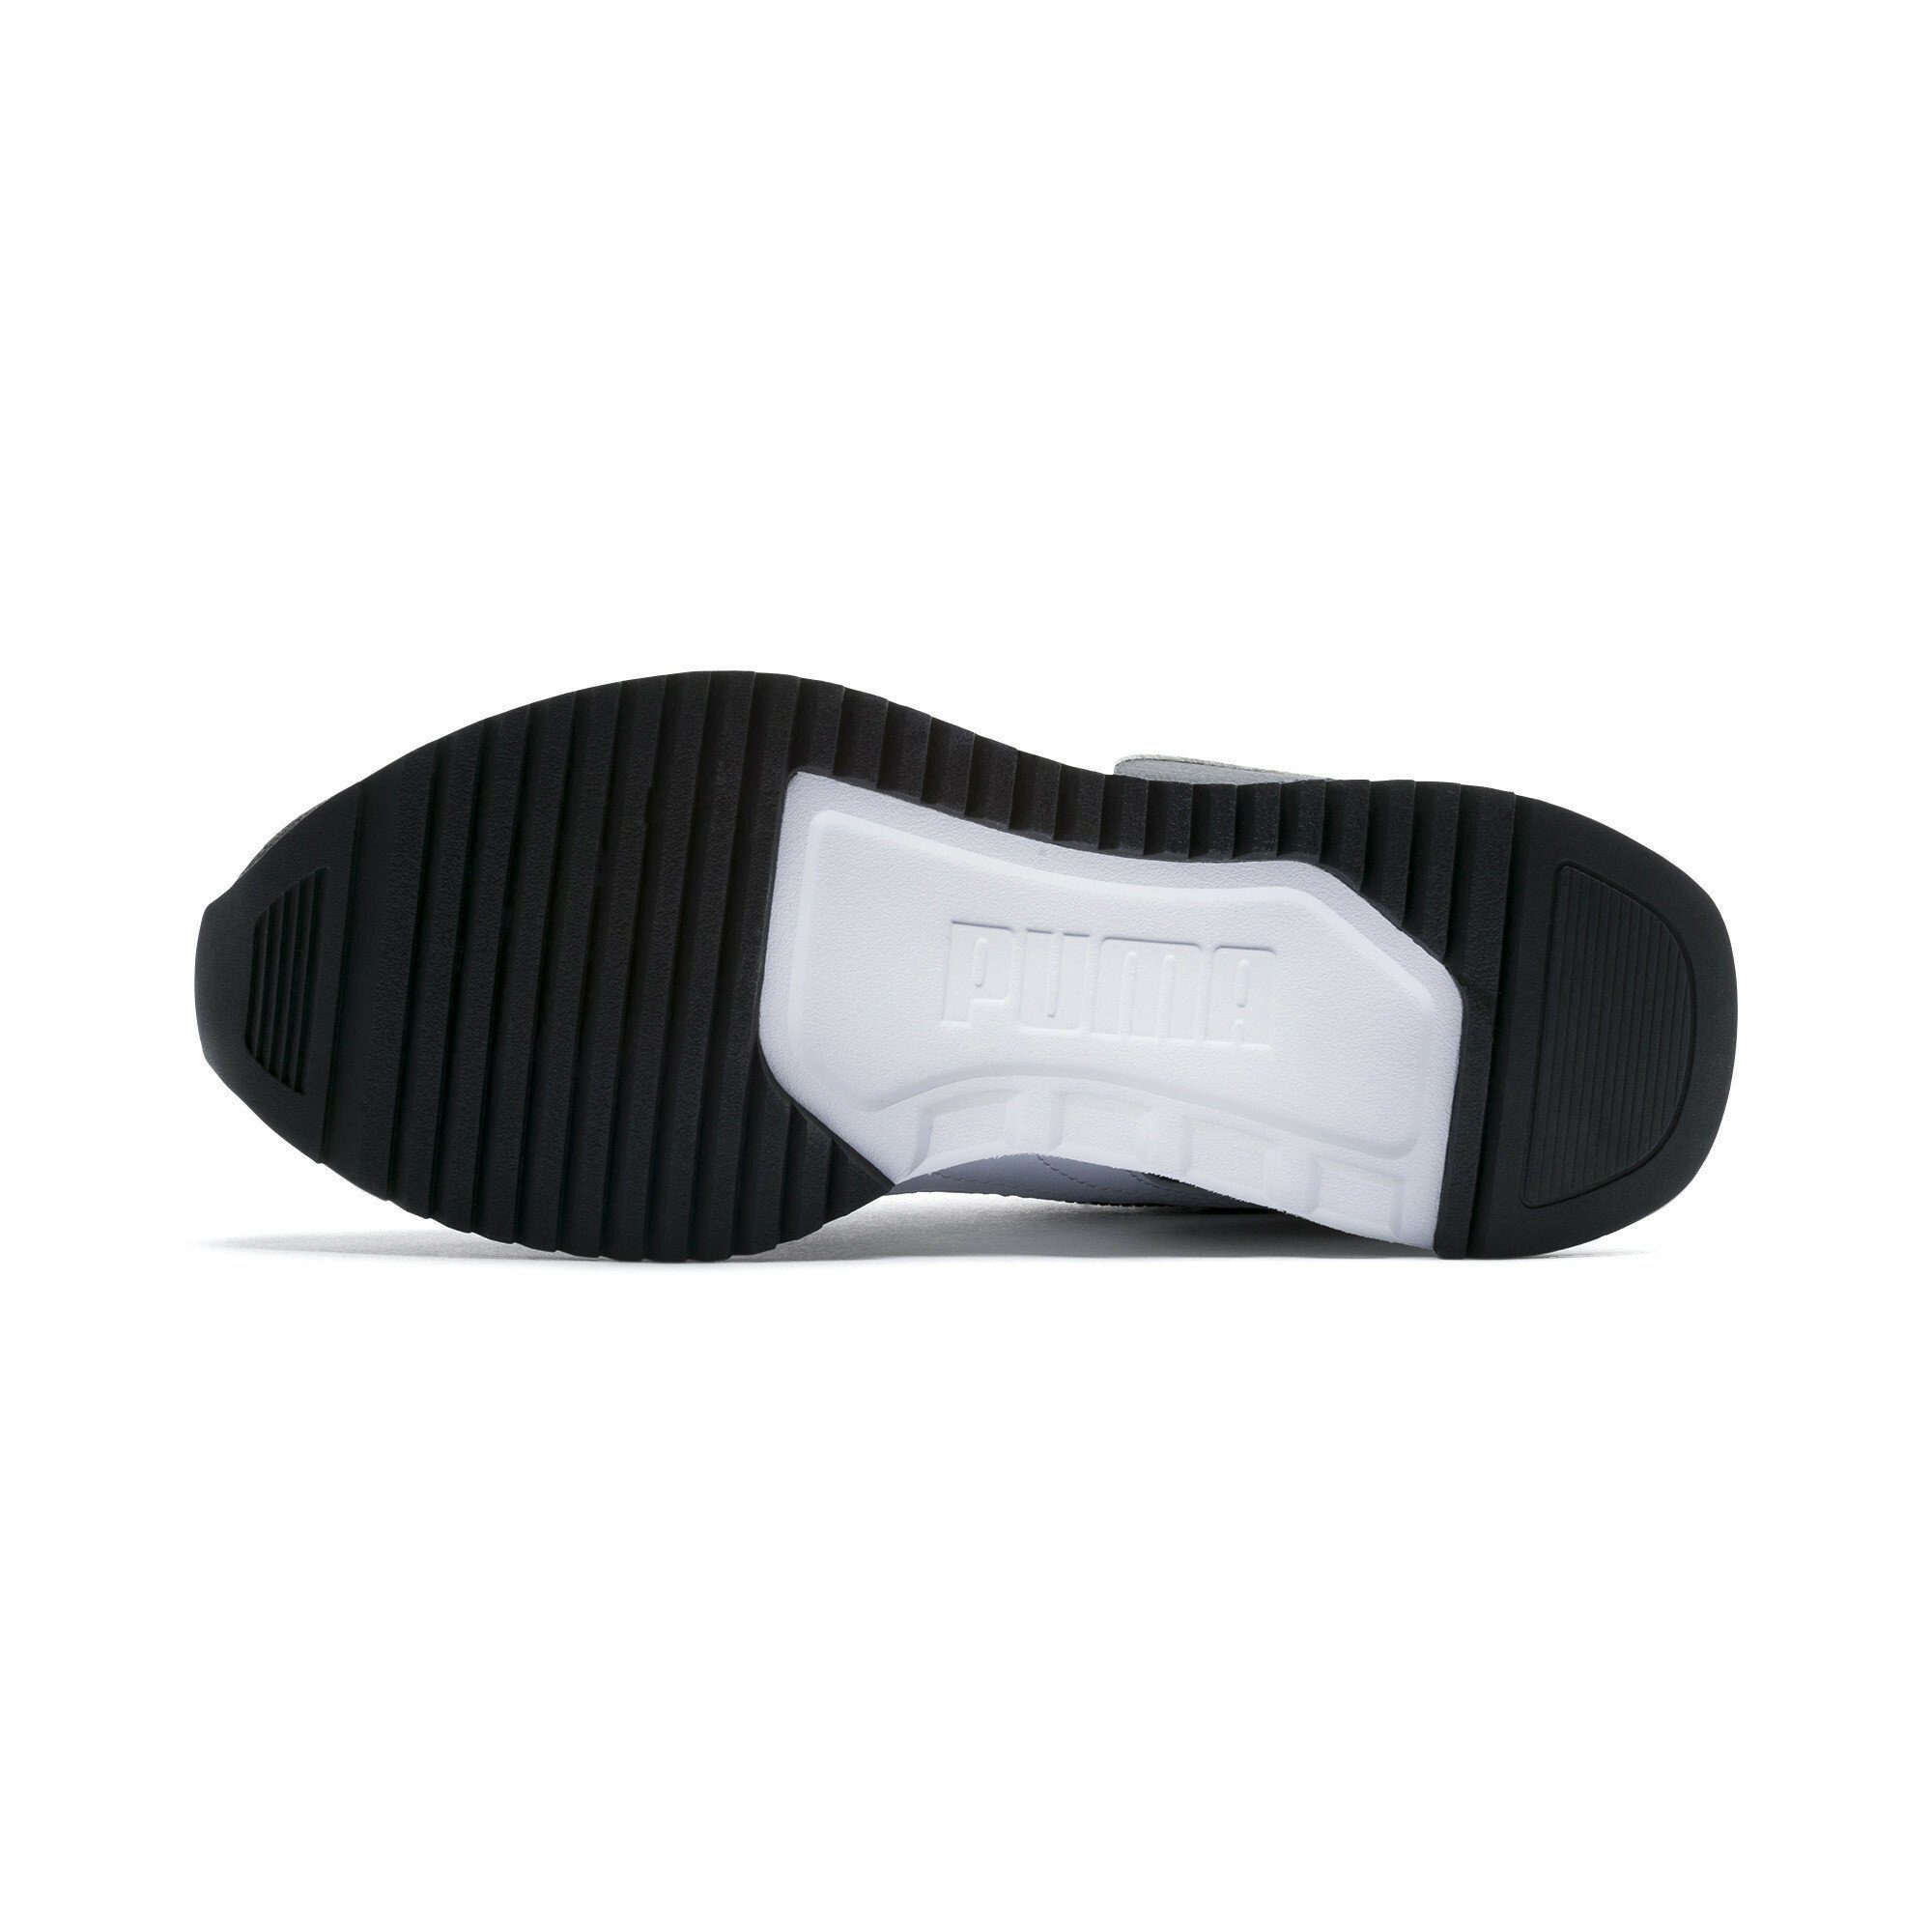 R78 Black White Jugendliche Laufschuh PUMA Sneakers